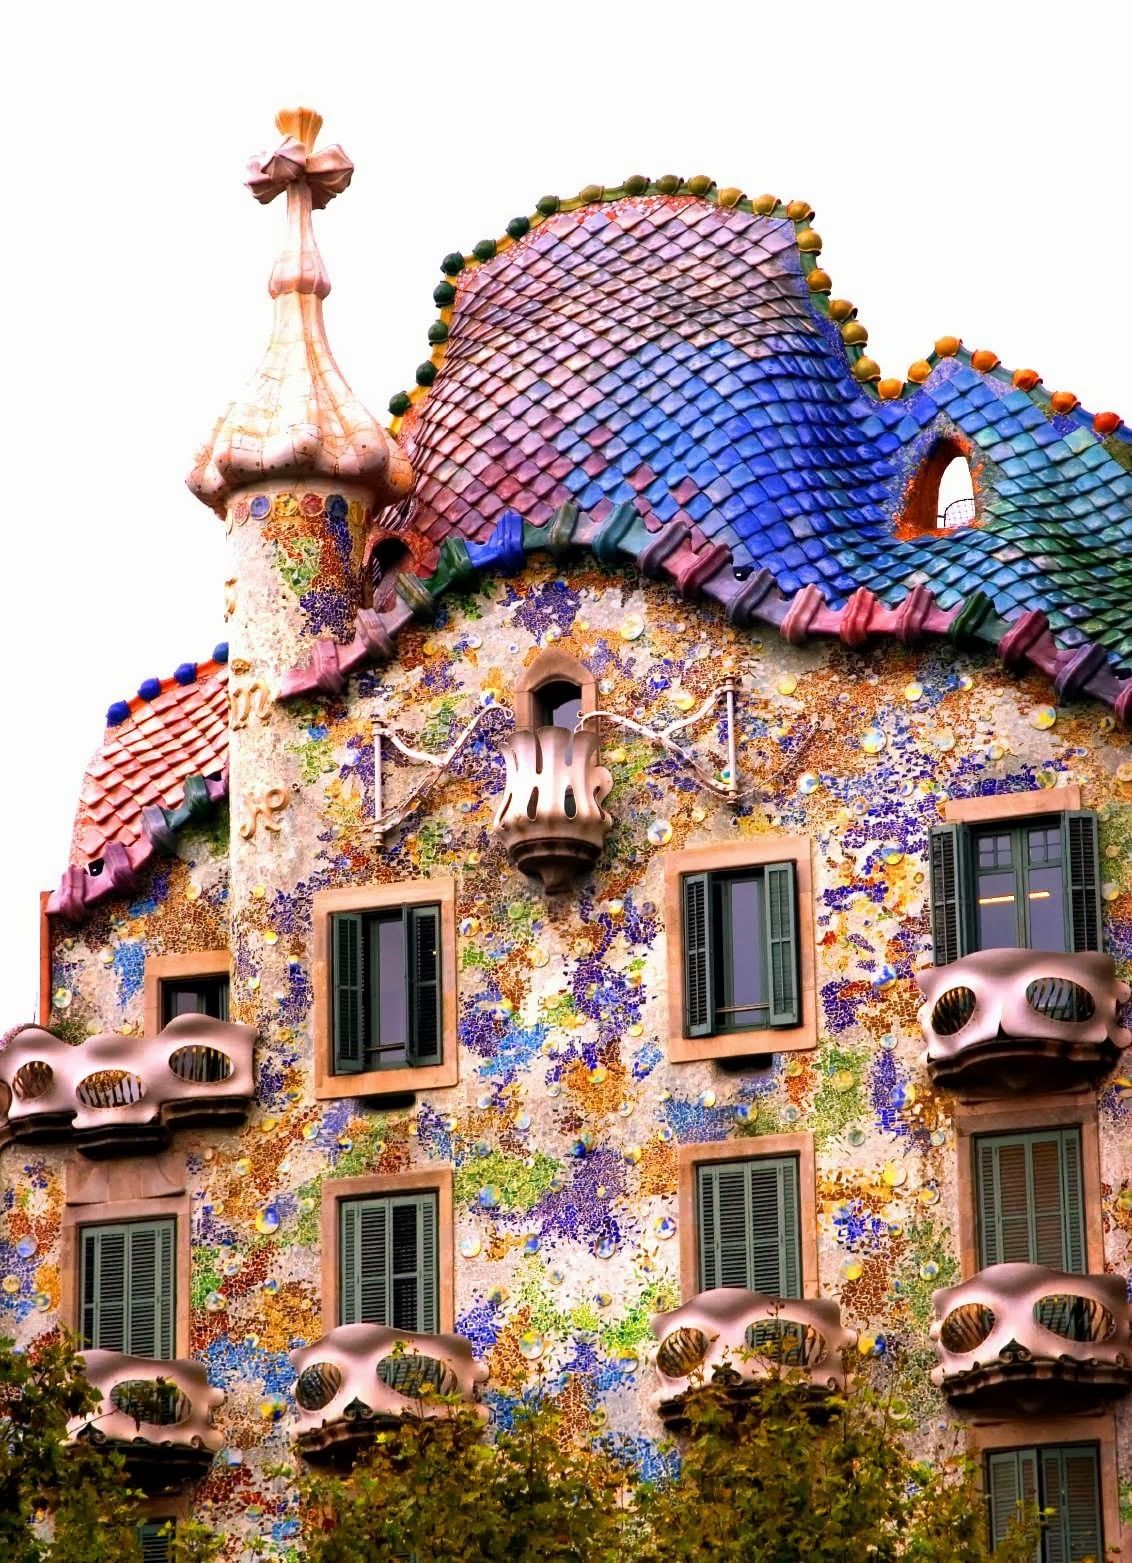 Casa Batllo Gaudi Roof